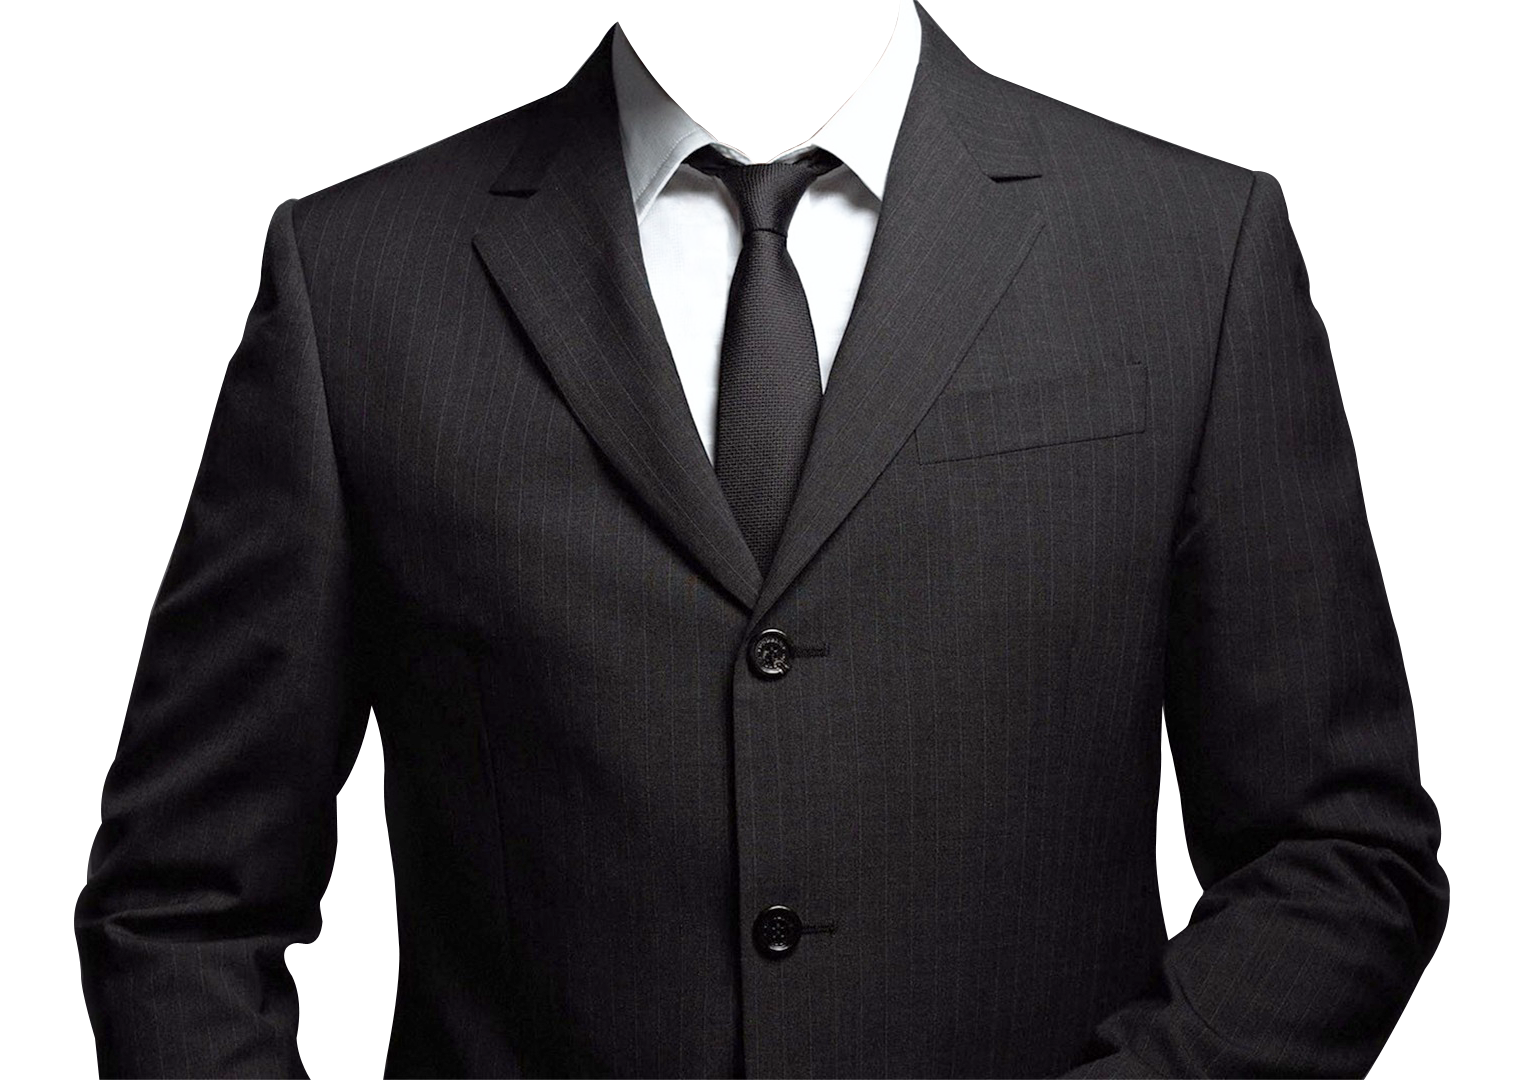 Suit Tie Neck Transparent Images